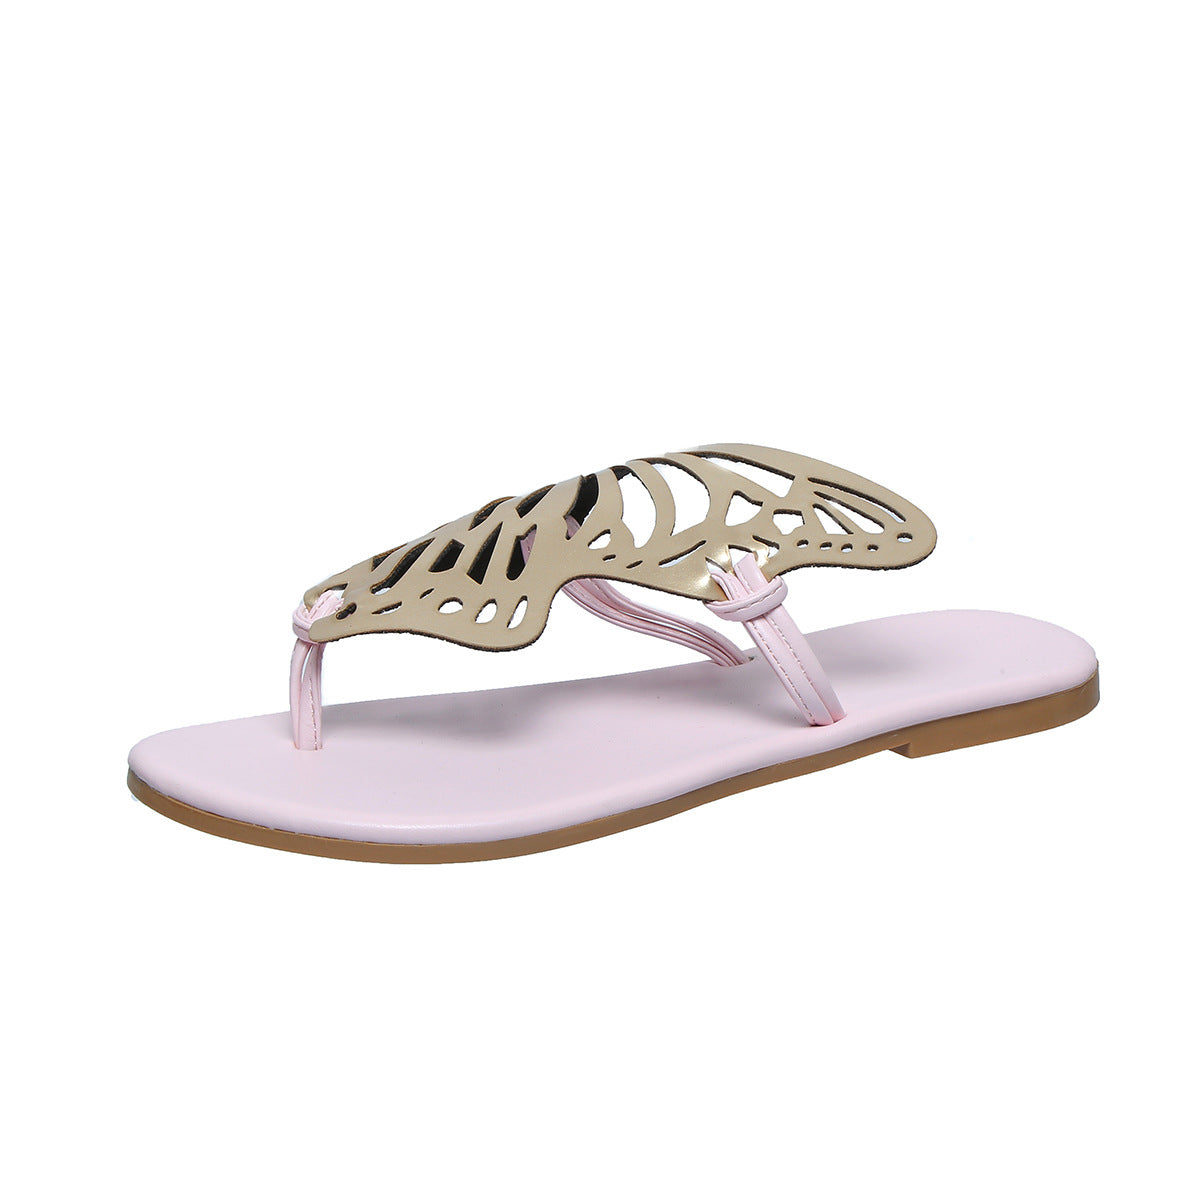 Mode Schmetterling Flip-Flops Sommer Sandalen für Frauen Casual Strands chuhe Neue flache Slides mit niedrigem Absatz